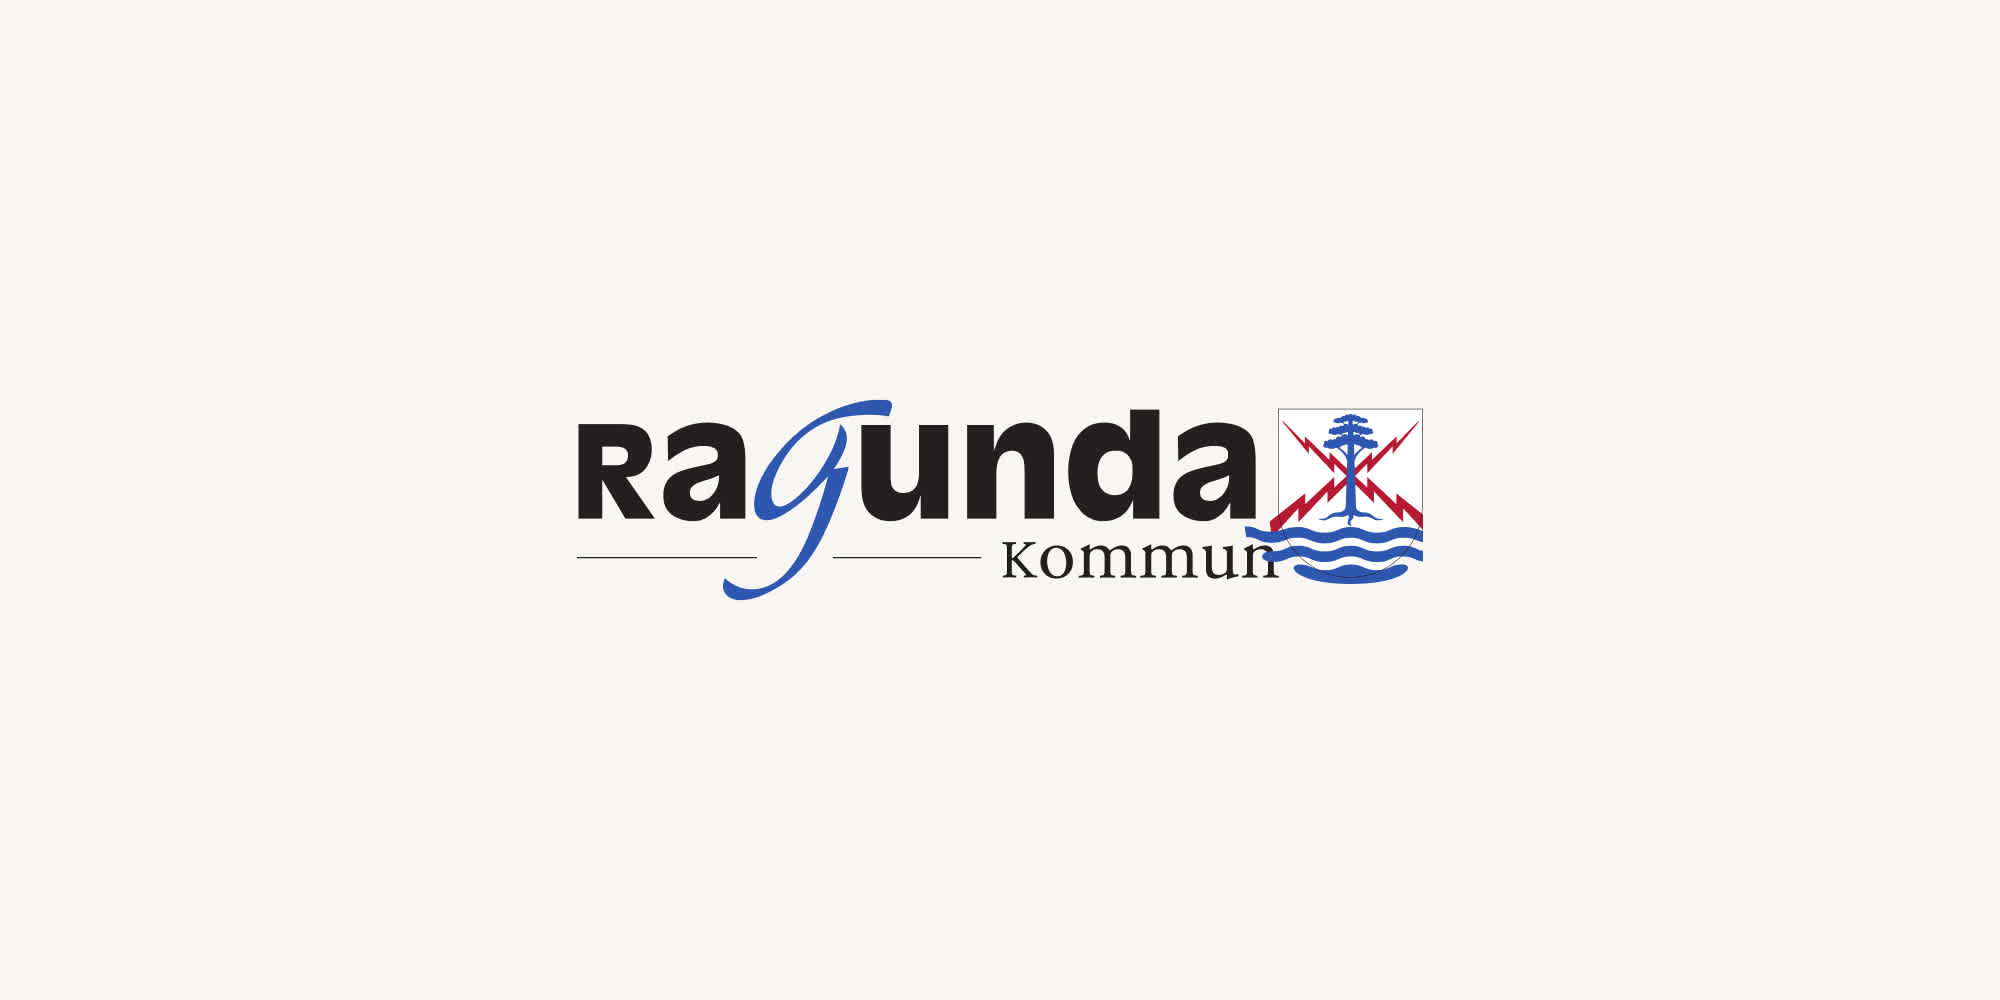 Ragunda kommuns logotyp